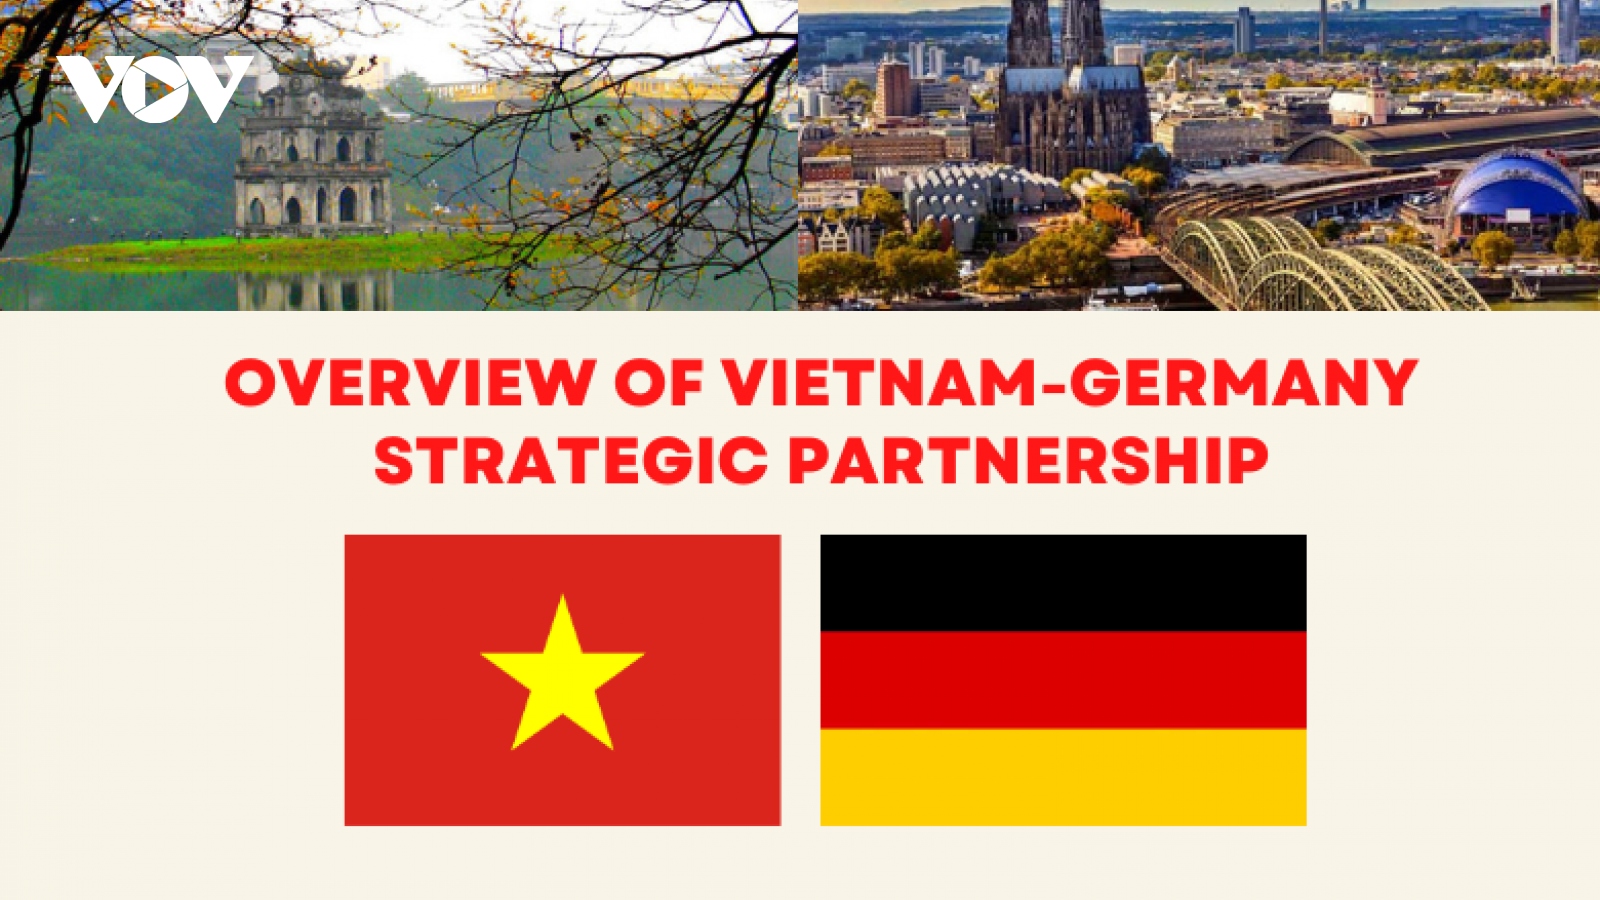 Major milestones in Vietnam-Germany strategic partnership